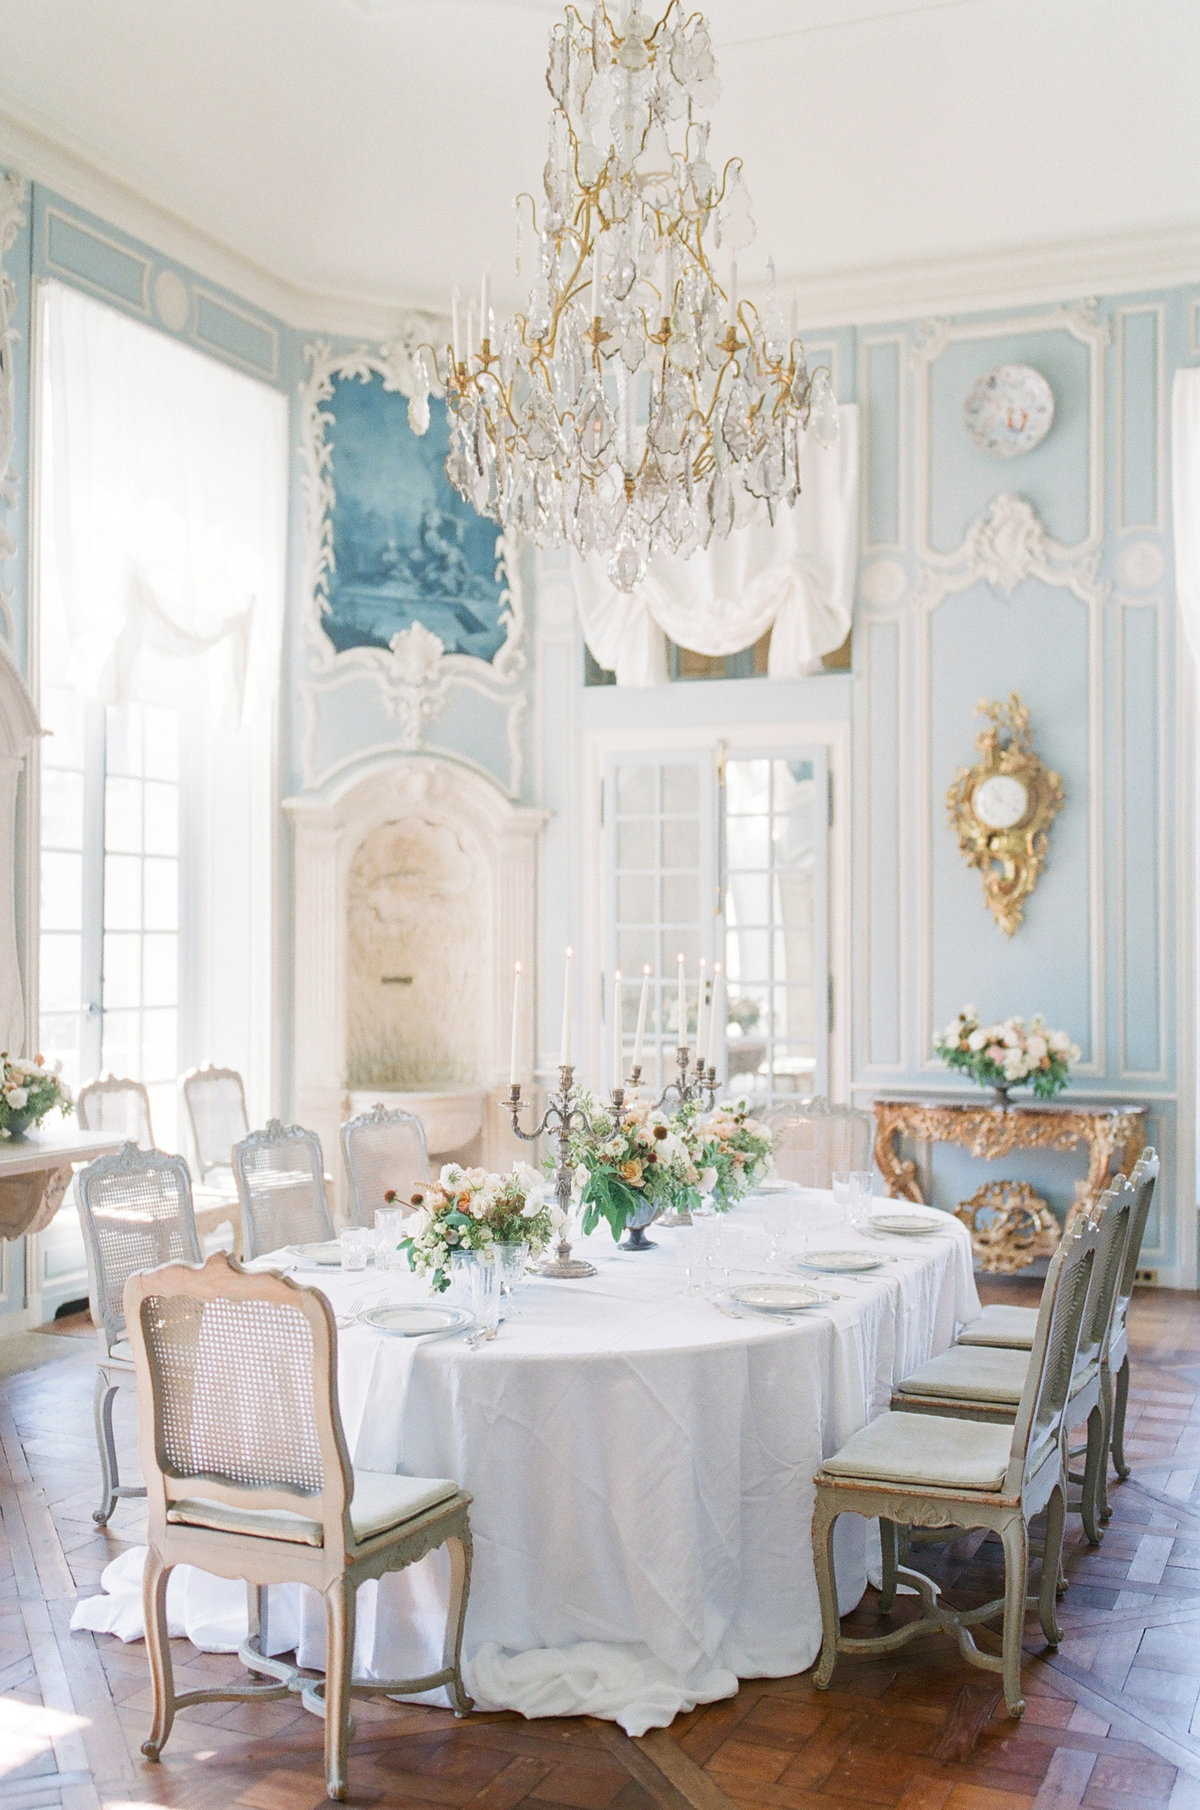 Château de Villette wedding reception near Paris, France